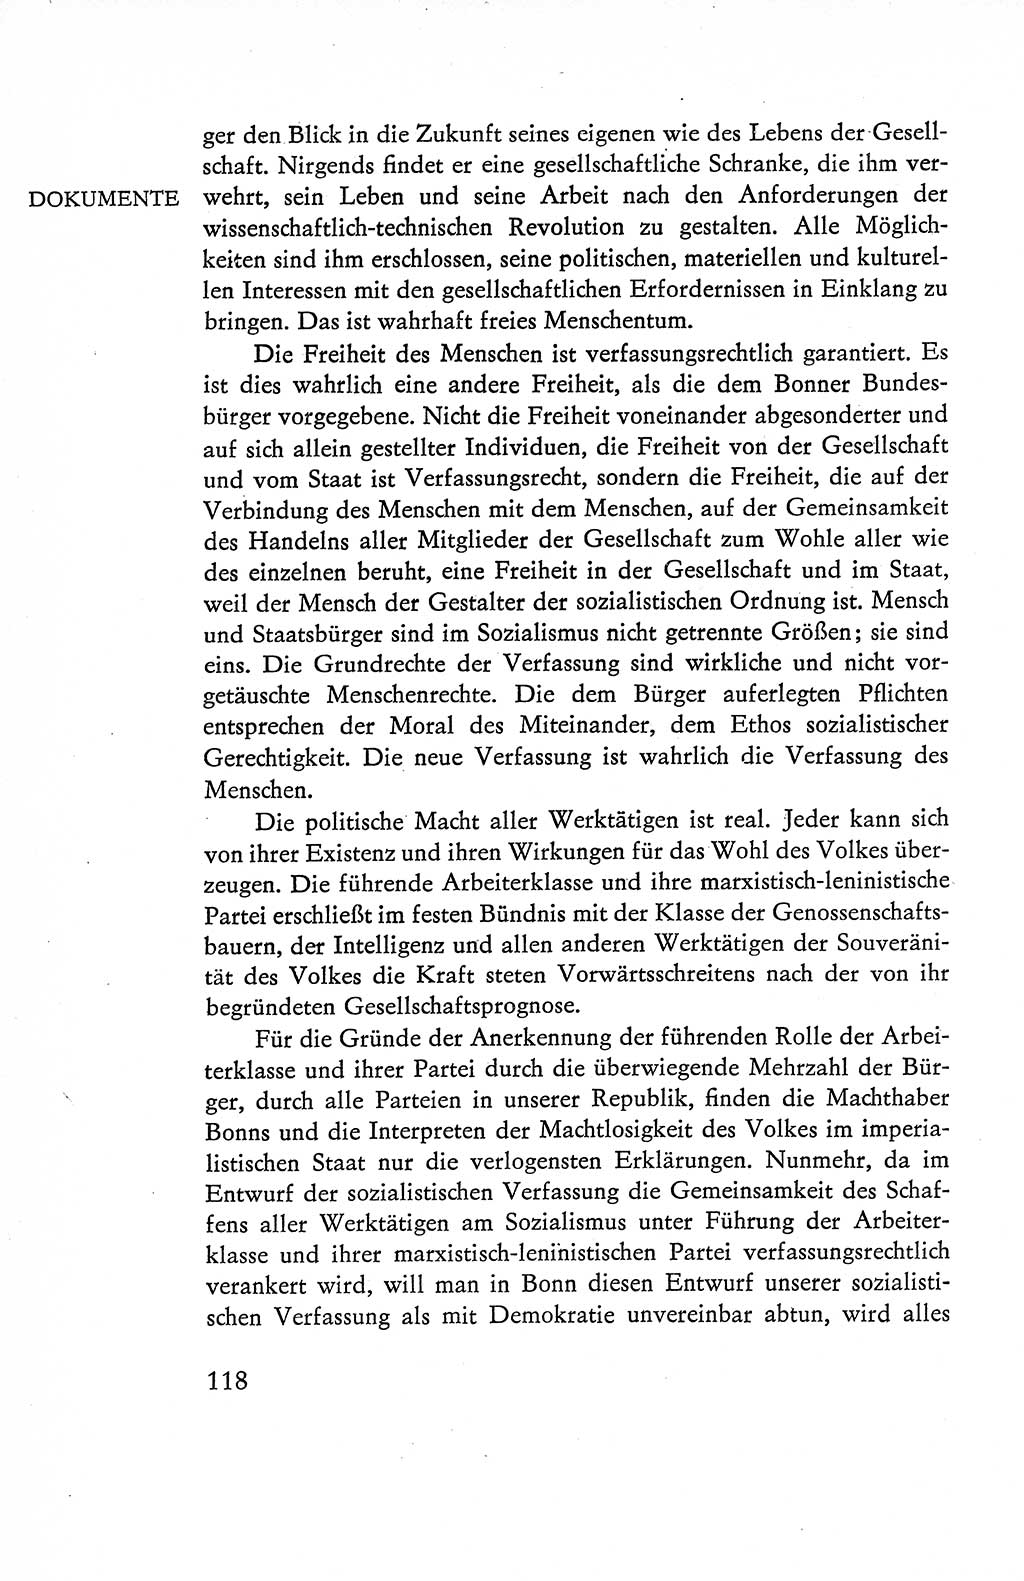 Verfassung der Deutschen Demokratischen Republik (DDR), Dokumente, Kommentar 1969, Band 1, Seite 118 (Verf. DDR Dok. Komm. 1969, Bd. 1, S. 118)